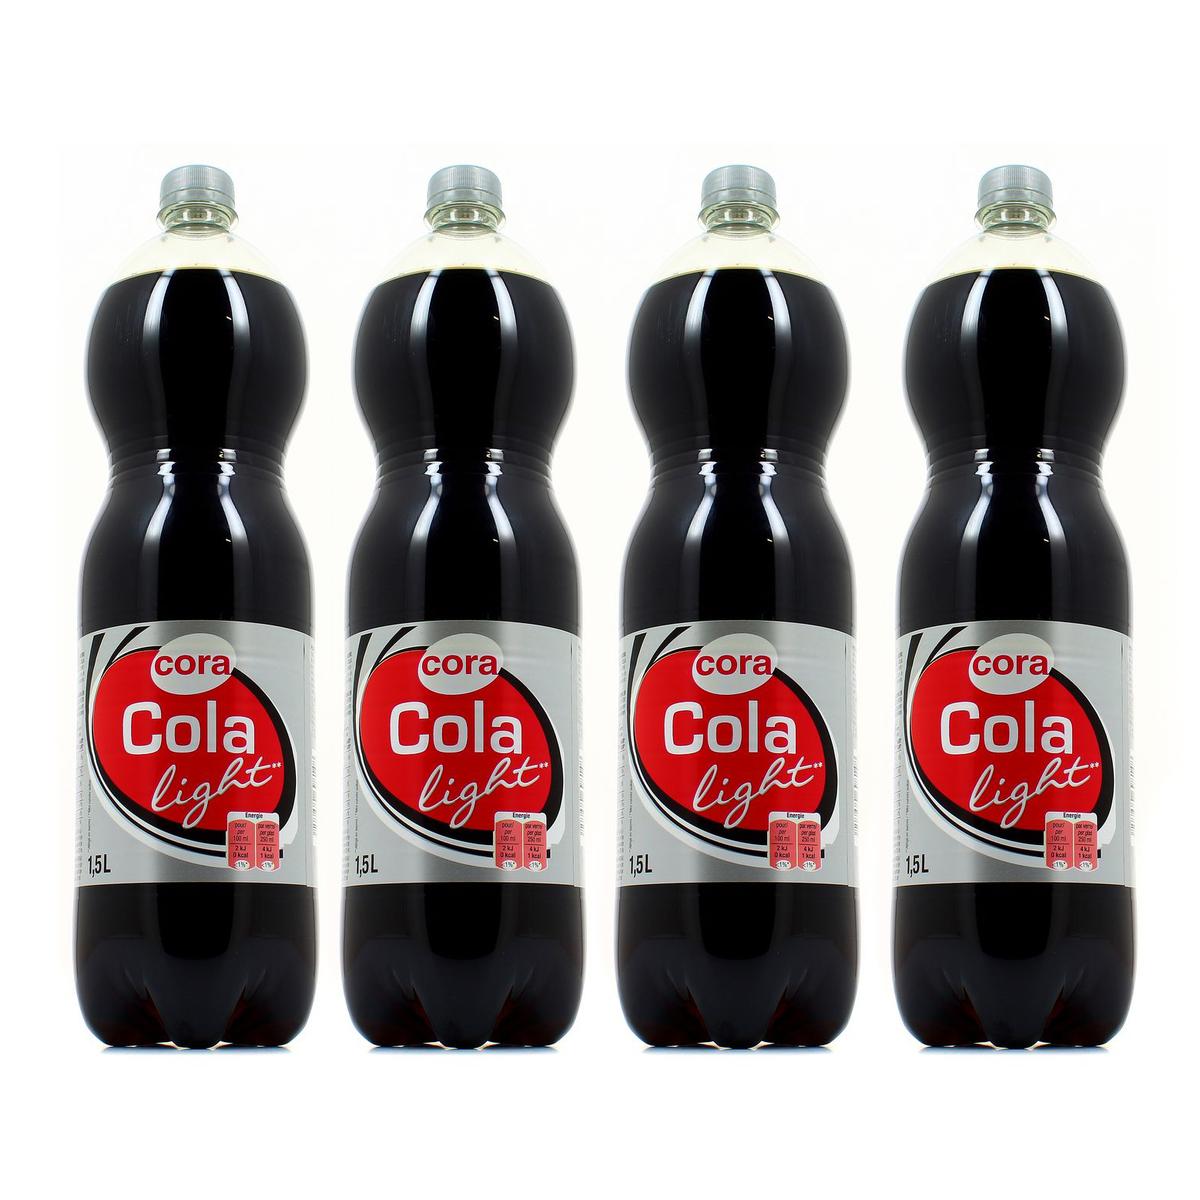 Achat Sodastream Sirop concentré spécial boisson gazeuse - Cola Light